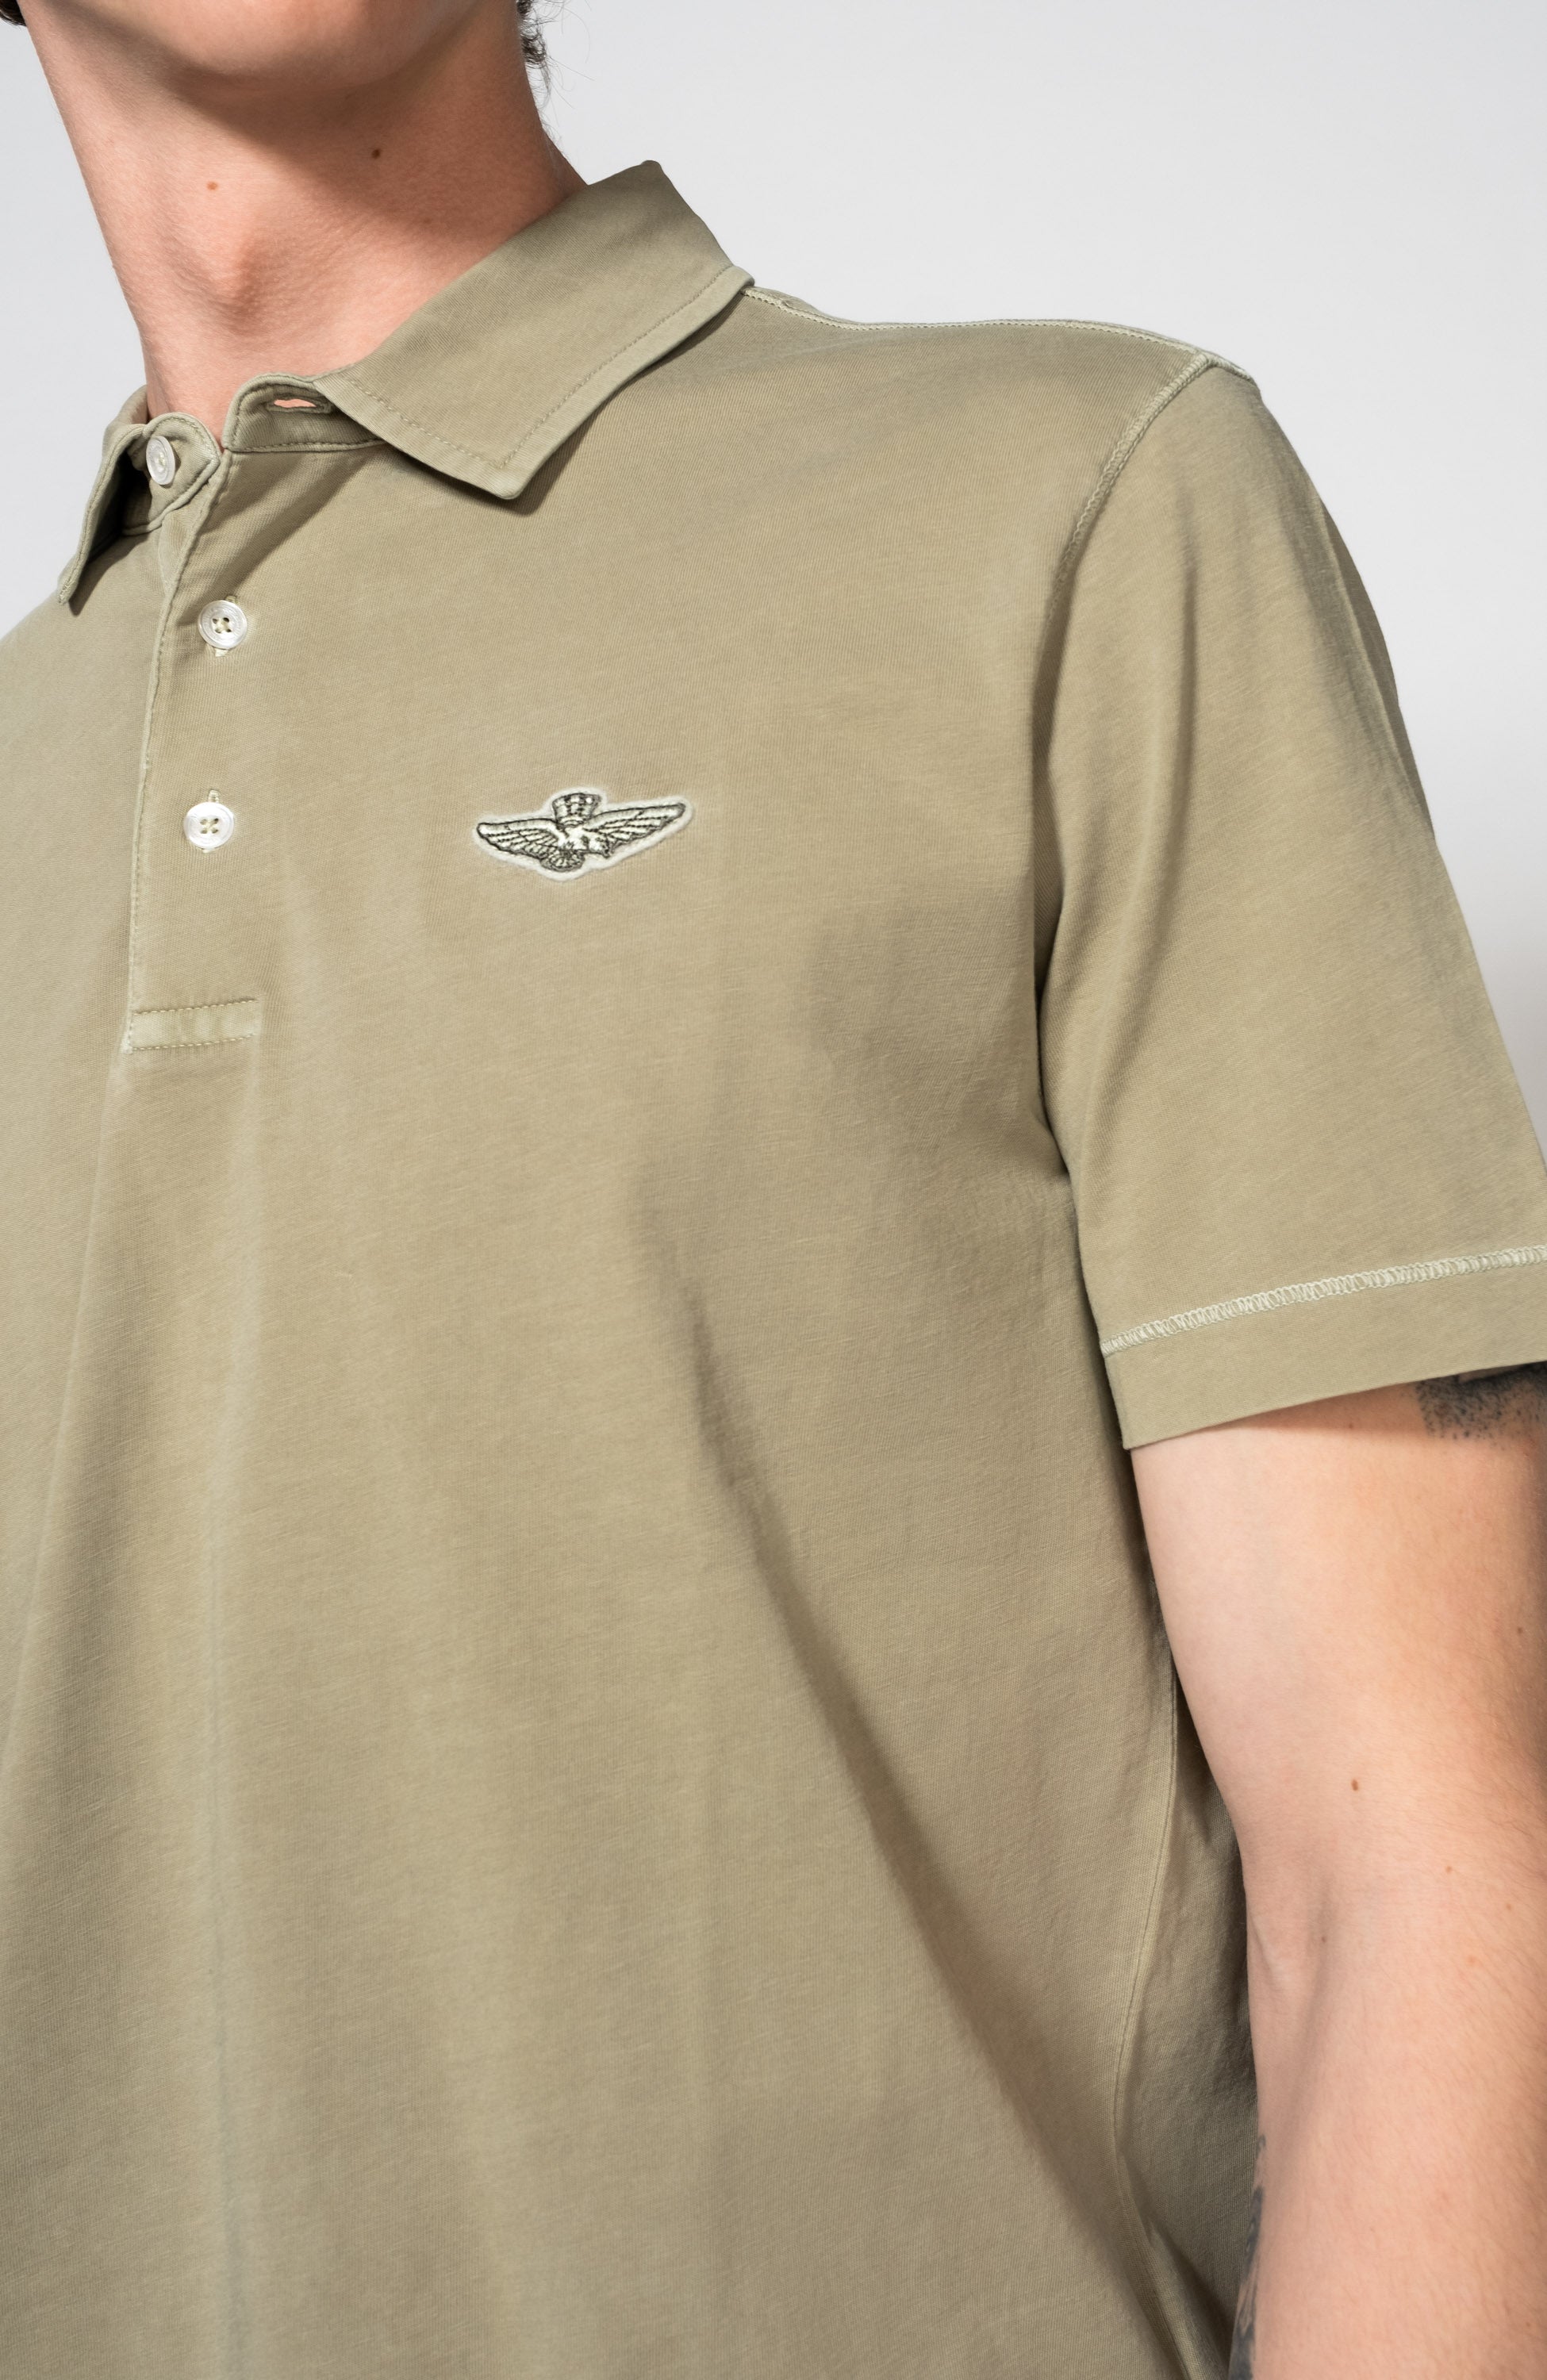 Eagle-patch polo shirt